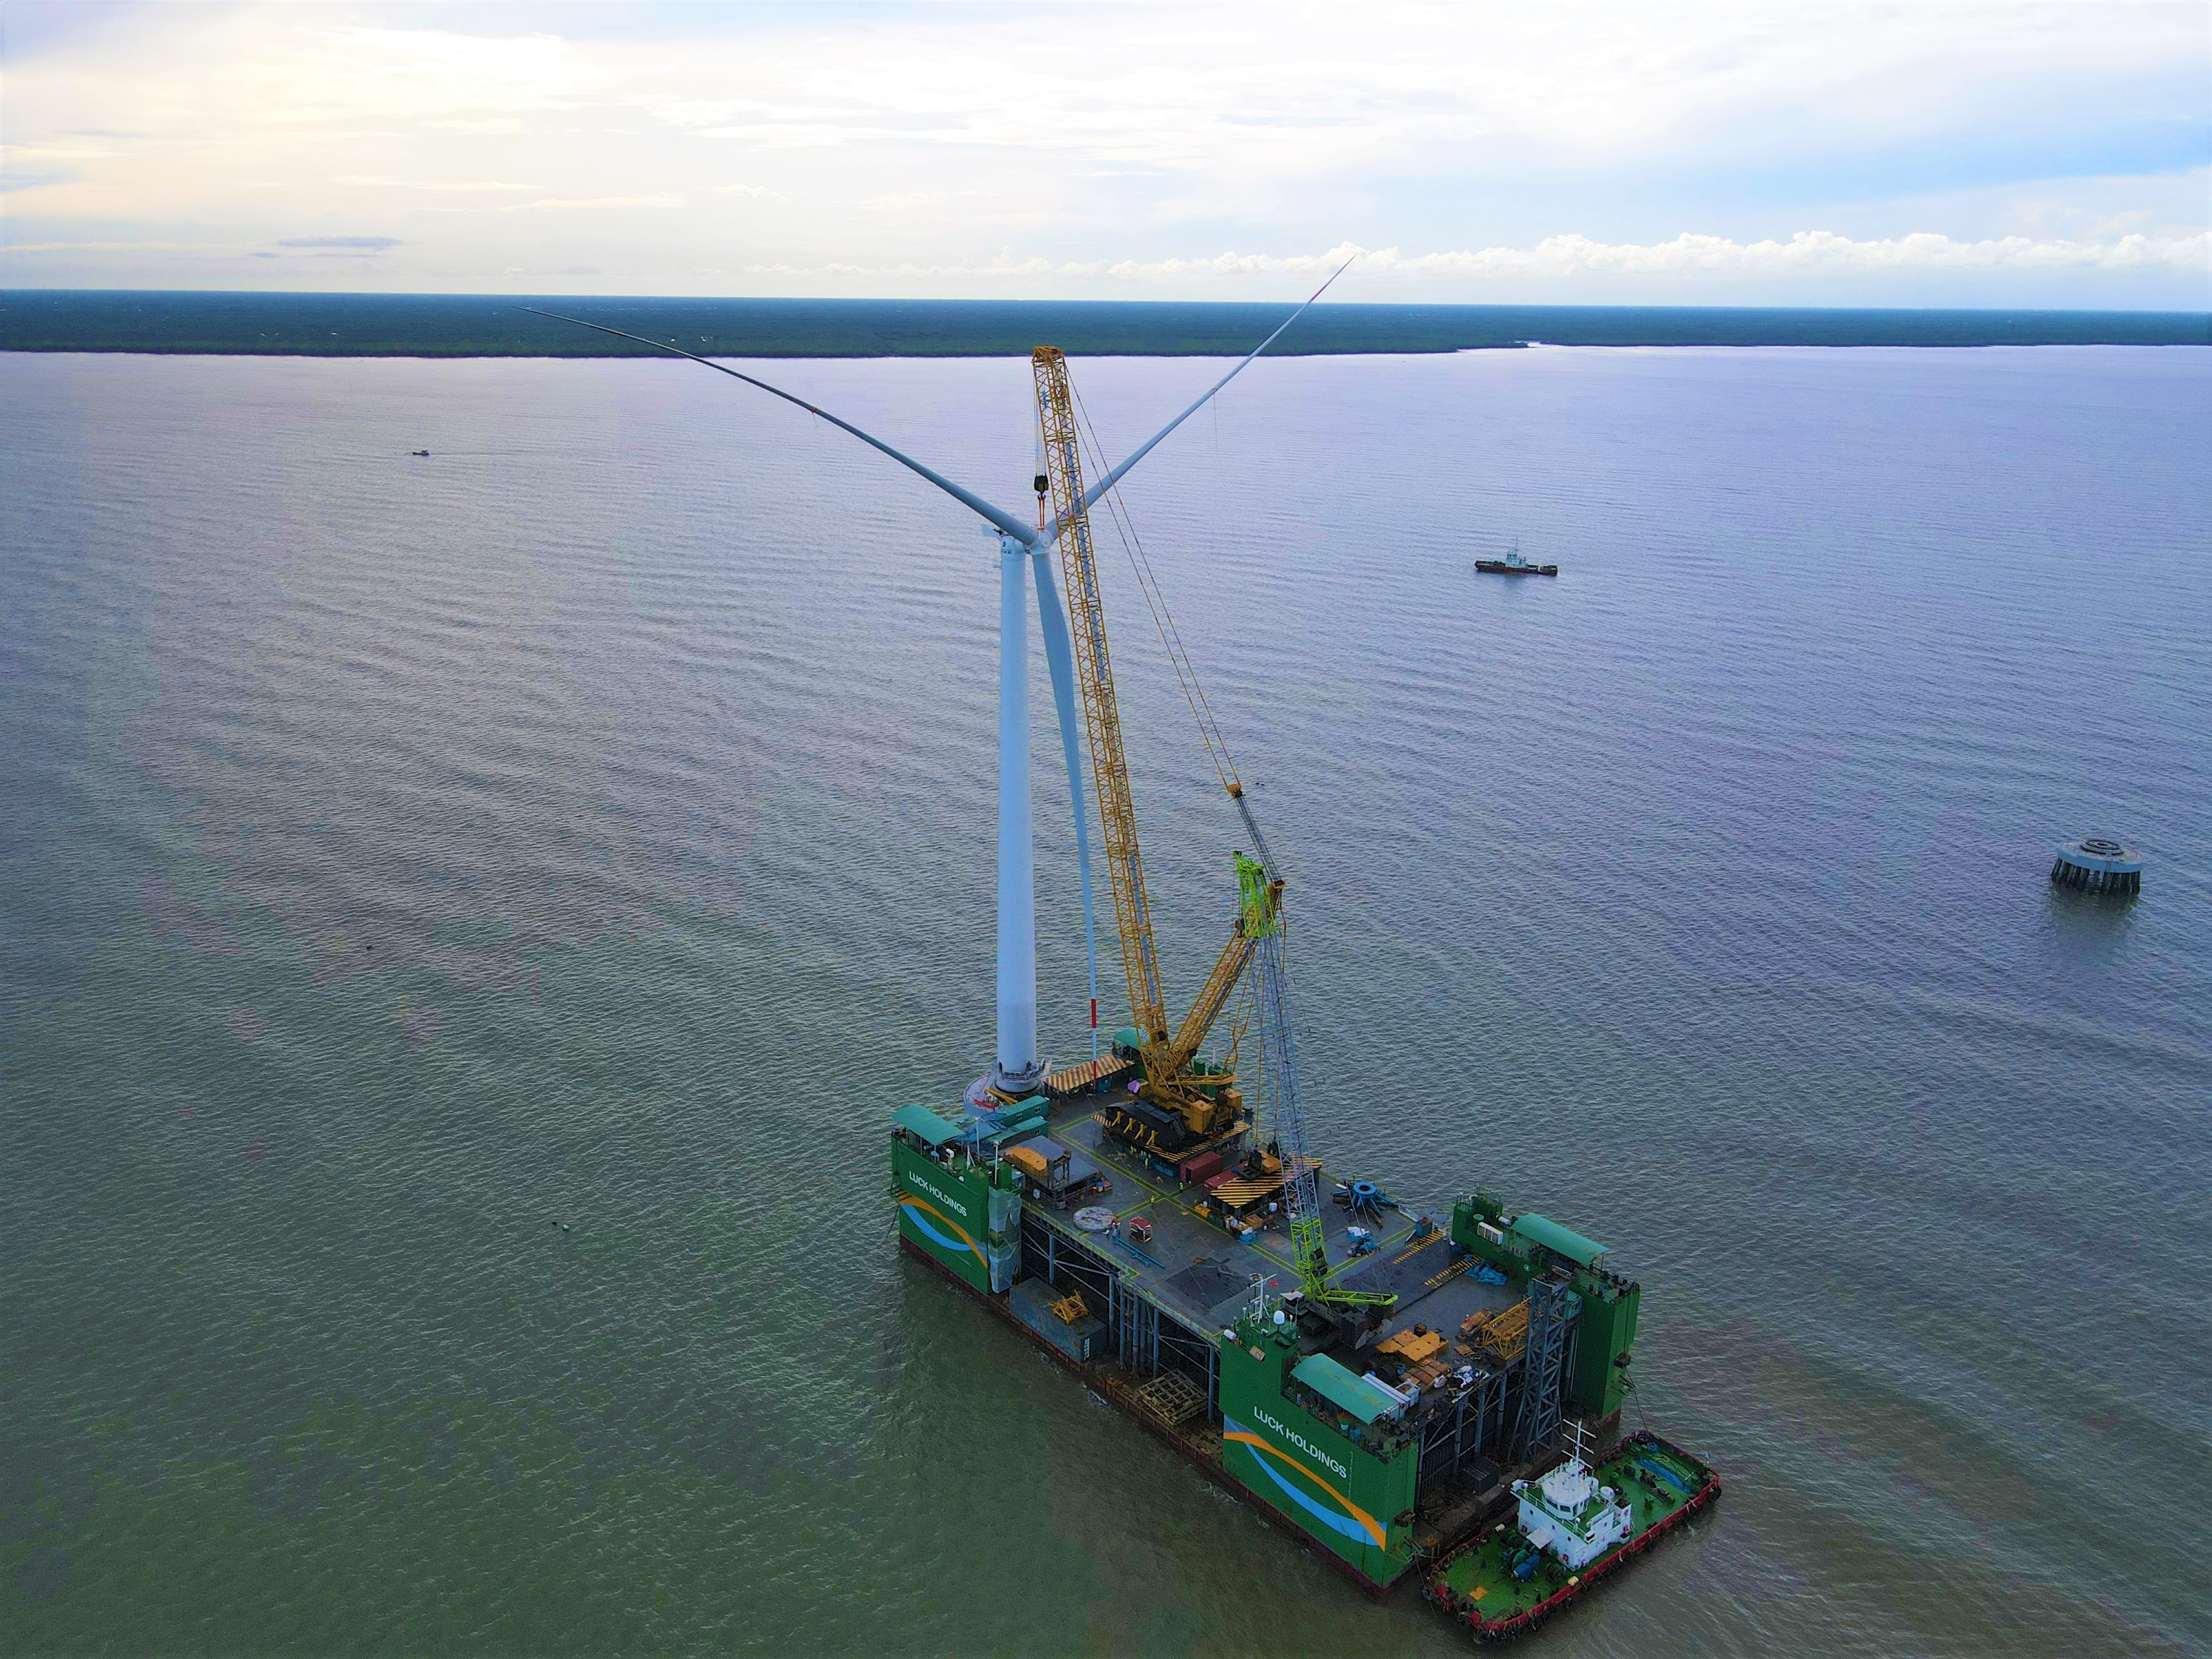 全球首台“导管架风机+网箱”风渔融合一体化装备顺利完成海上安装